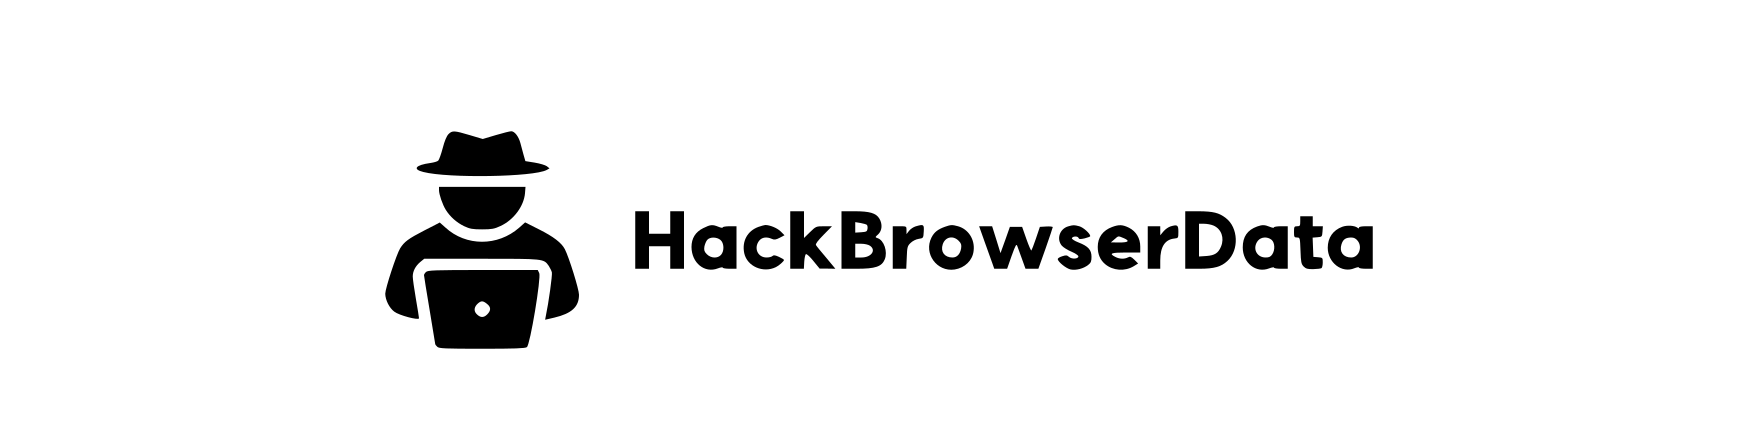 hack-browser-data logo